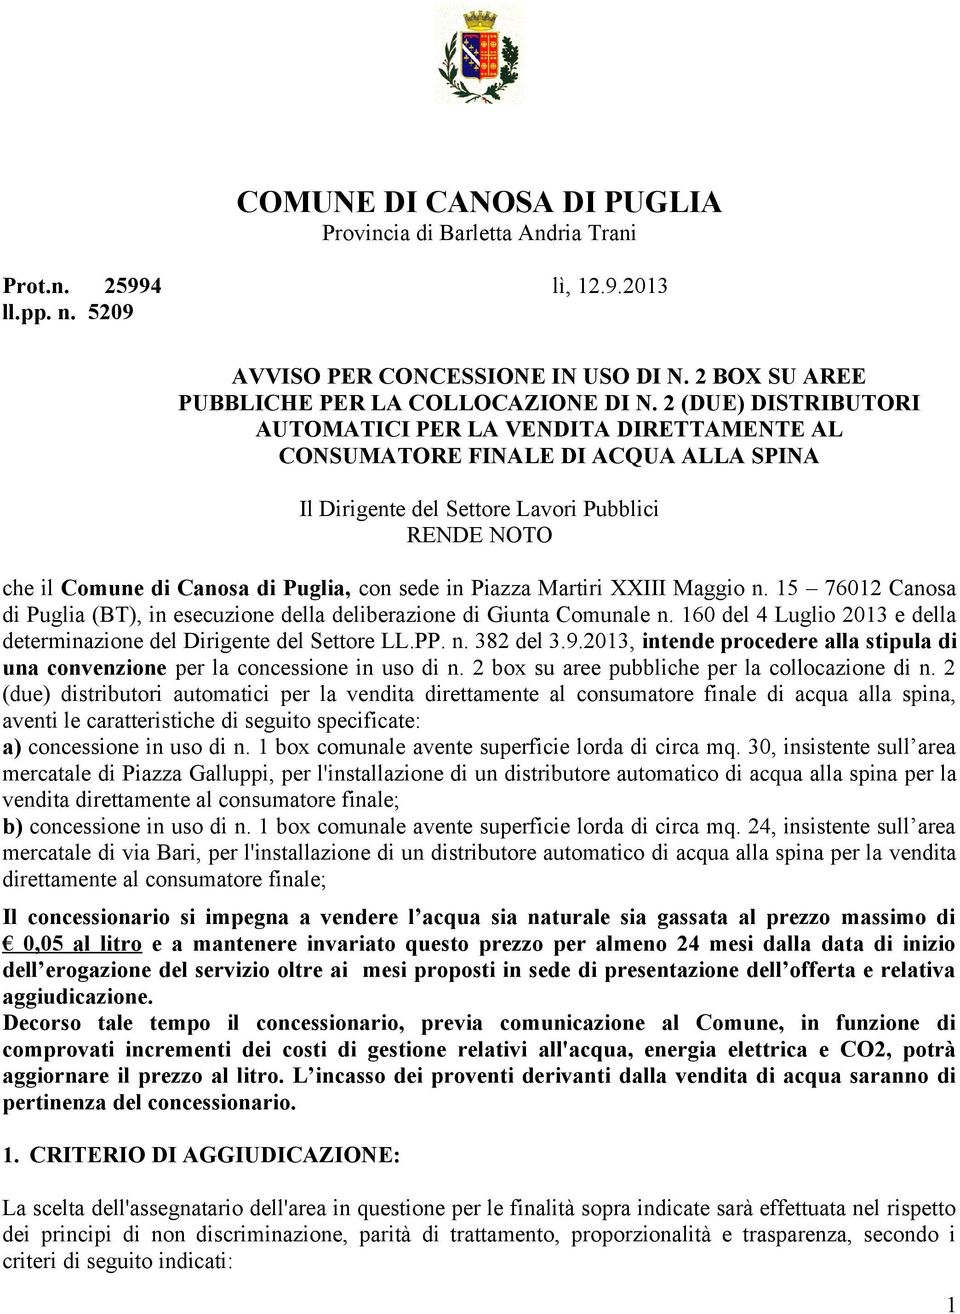 in Piazza Martiri XXIII Maggio n. 15 76012 Canosa di Puglia (BT), in esecuzione della deliberazione di Giunta Comunale n. 160 del 4 Luglio 2013 e della determinazione del Dirigente del Settore LL.PP.